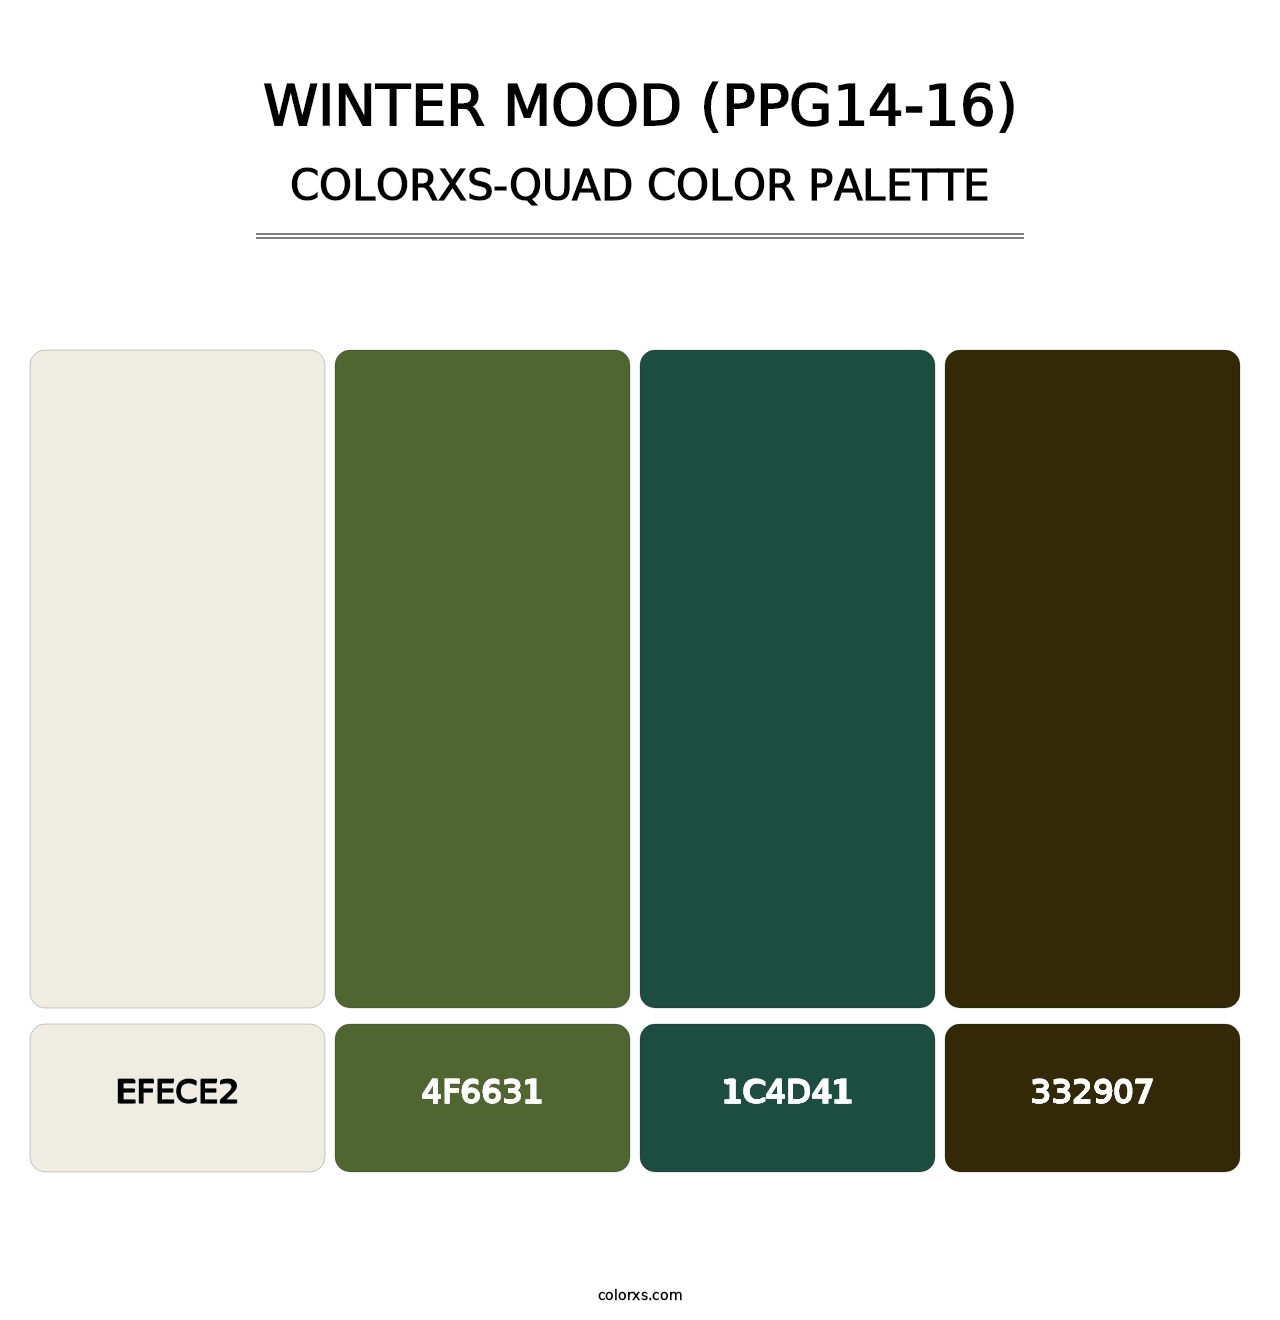 Winter Mood (PPG14-16) - Colorxs Quad Palette